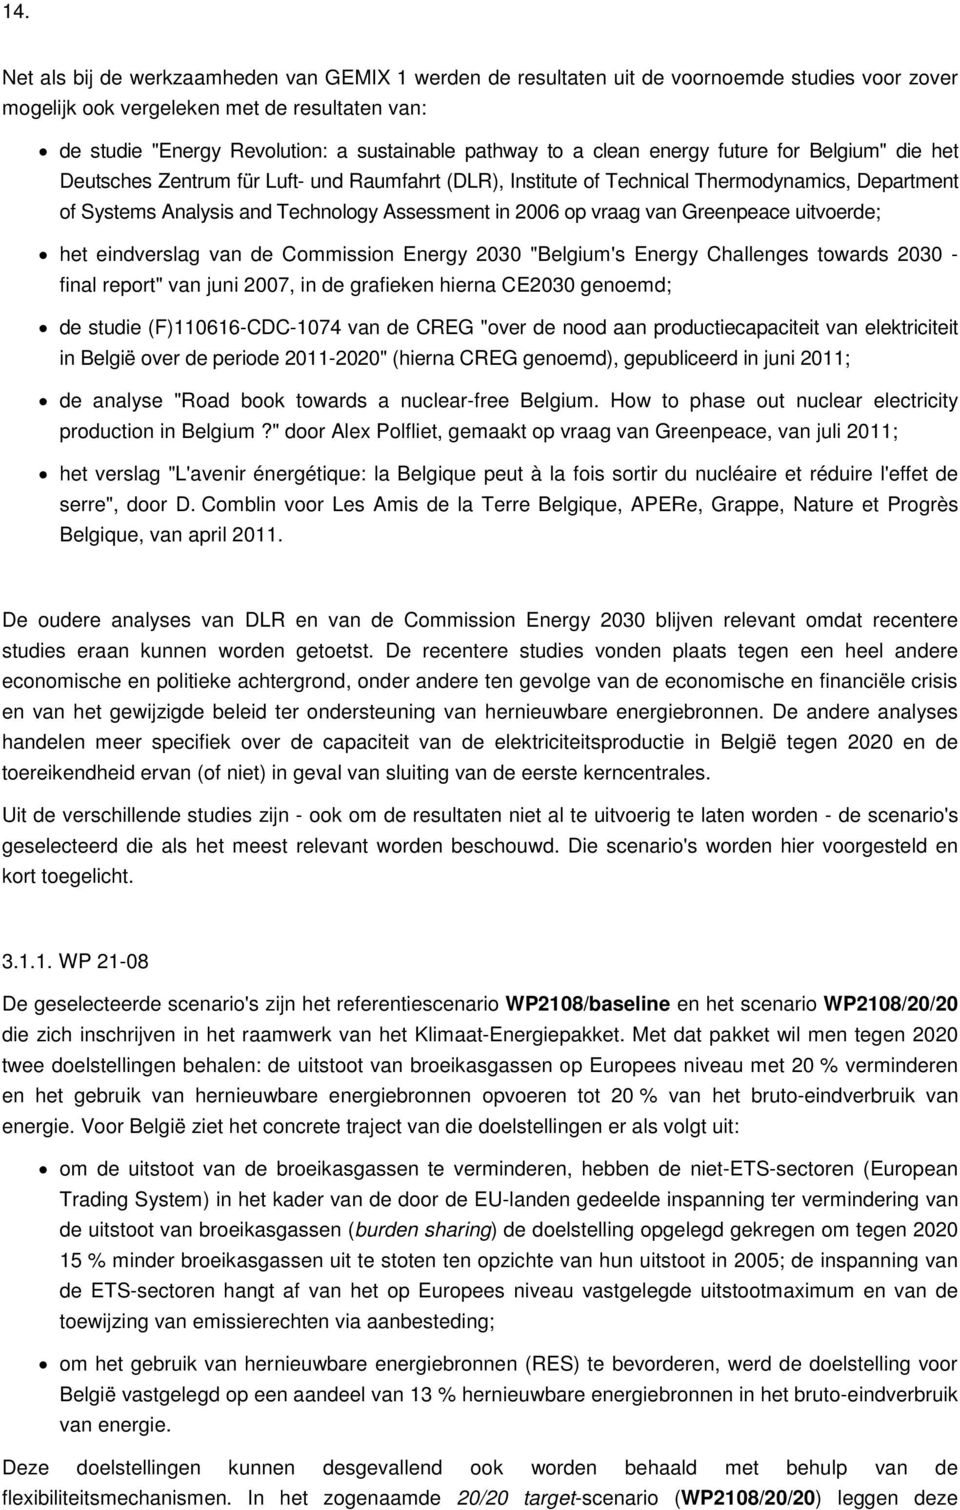 in 2006 op vraag van Greenpeace uitvoerde; het eindverslag van de Commission Energy 2030 "Belgium's Energy Challenges towards 2030 - final report" van juni 2007, in de grafieken hierna CE2030